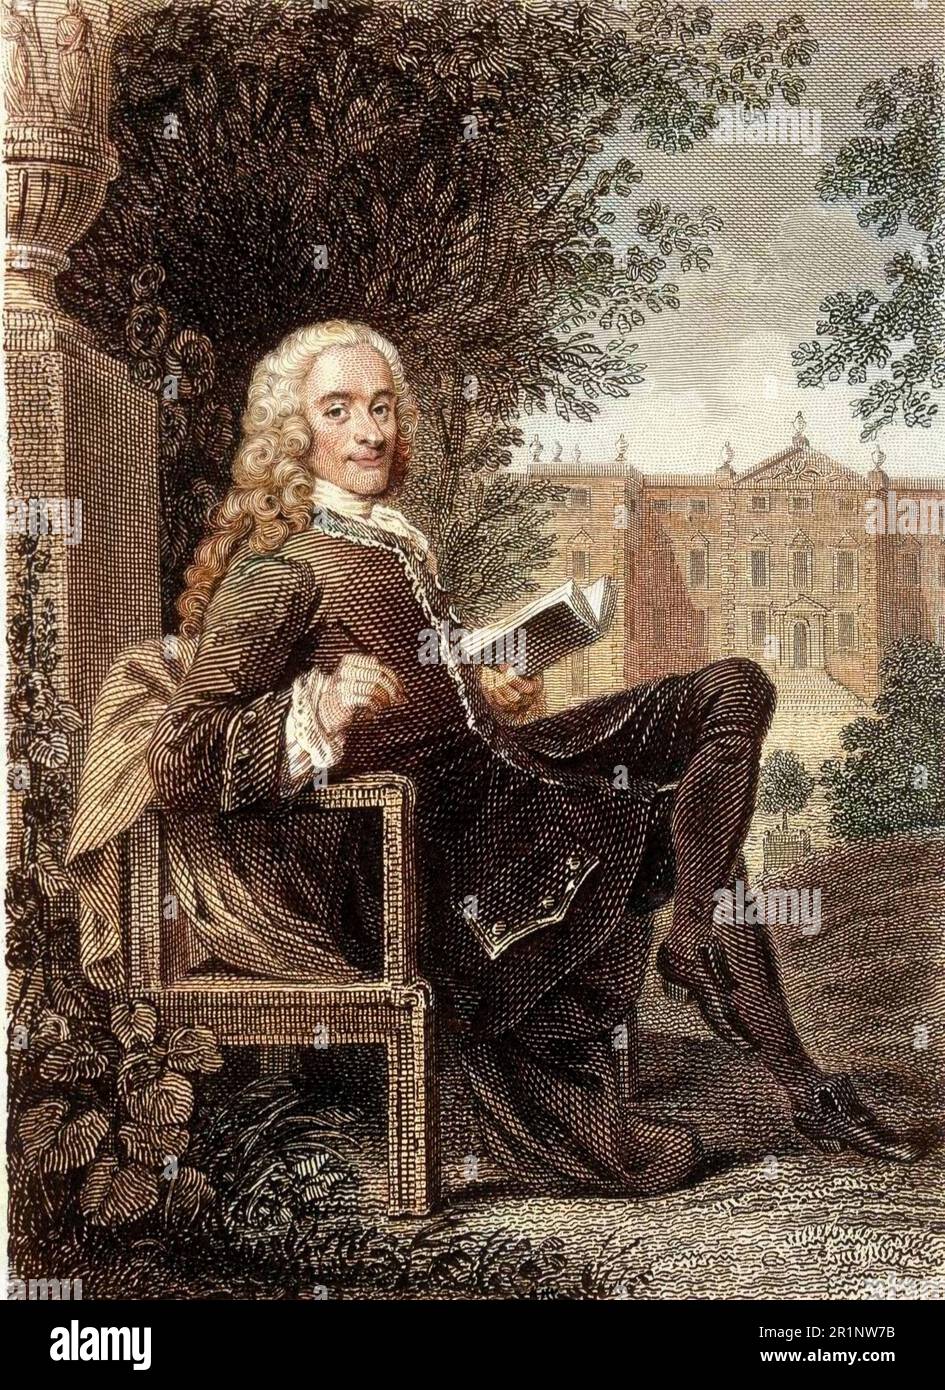 Voltaire lisant dans un parc - gravure du 19eme siecle Foto Stock